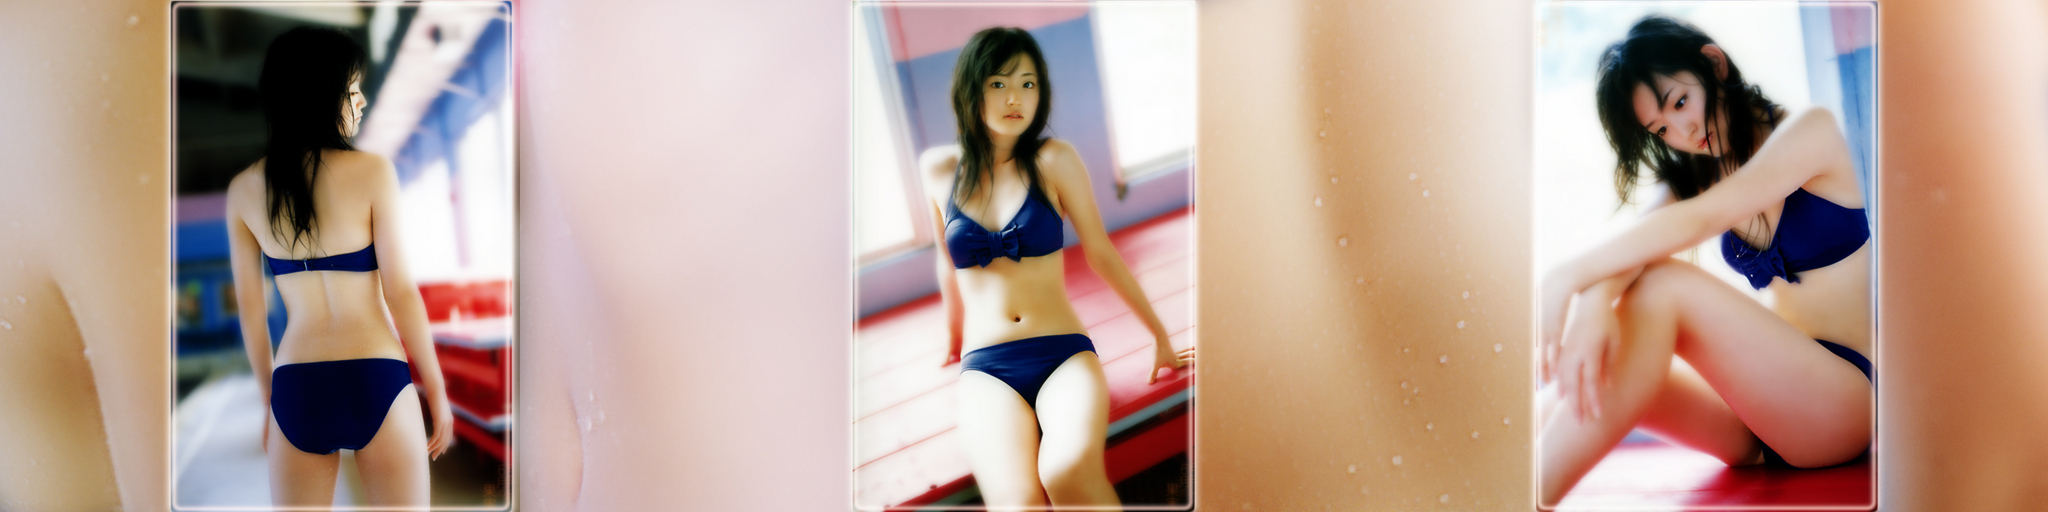 Airi Blue Bikini.jpg